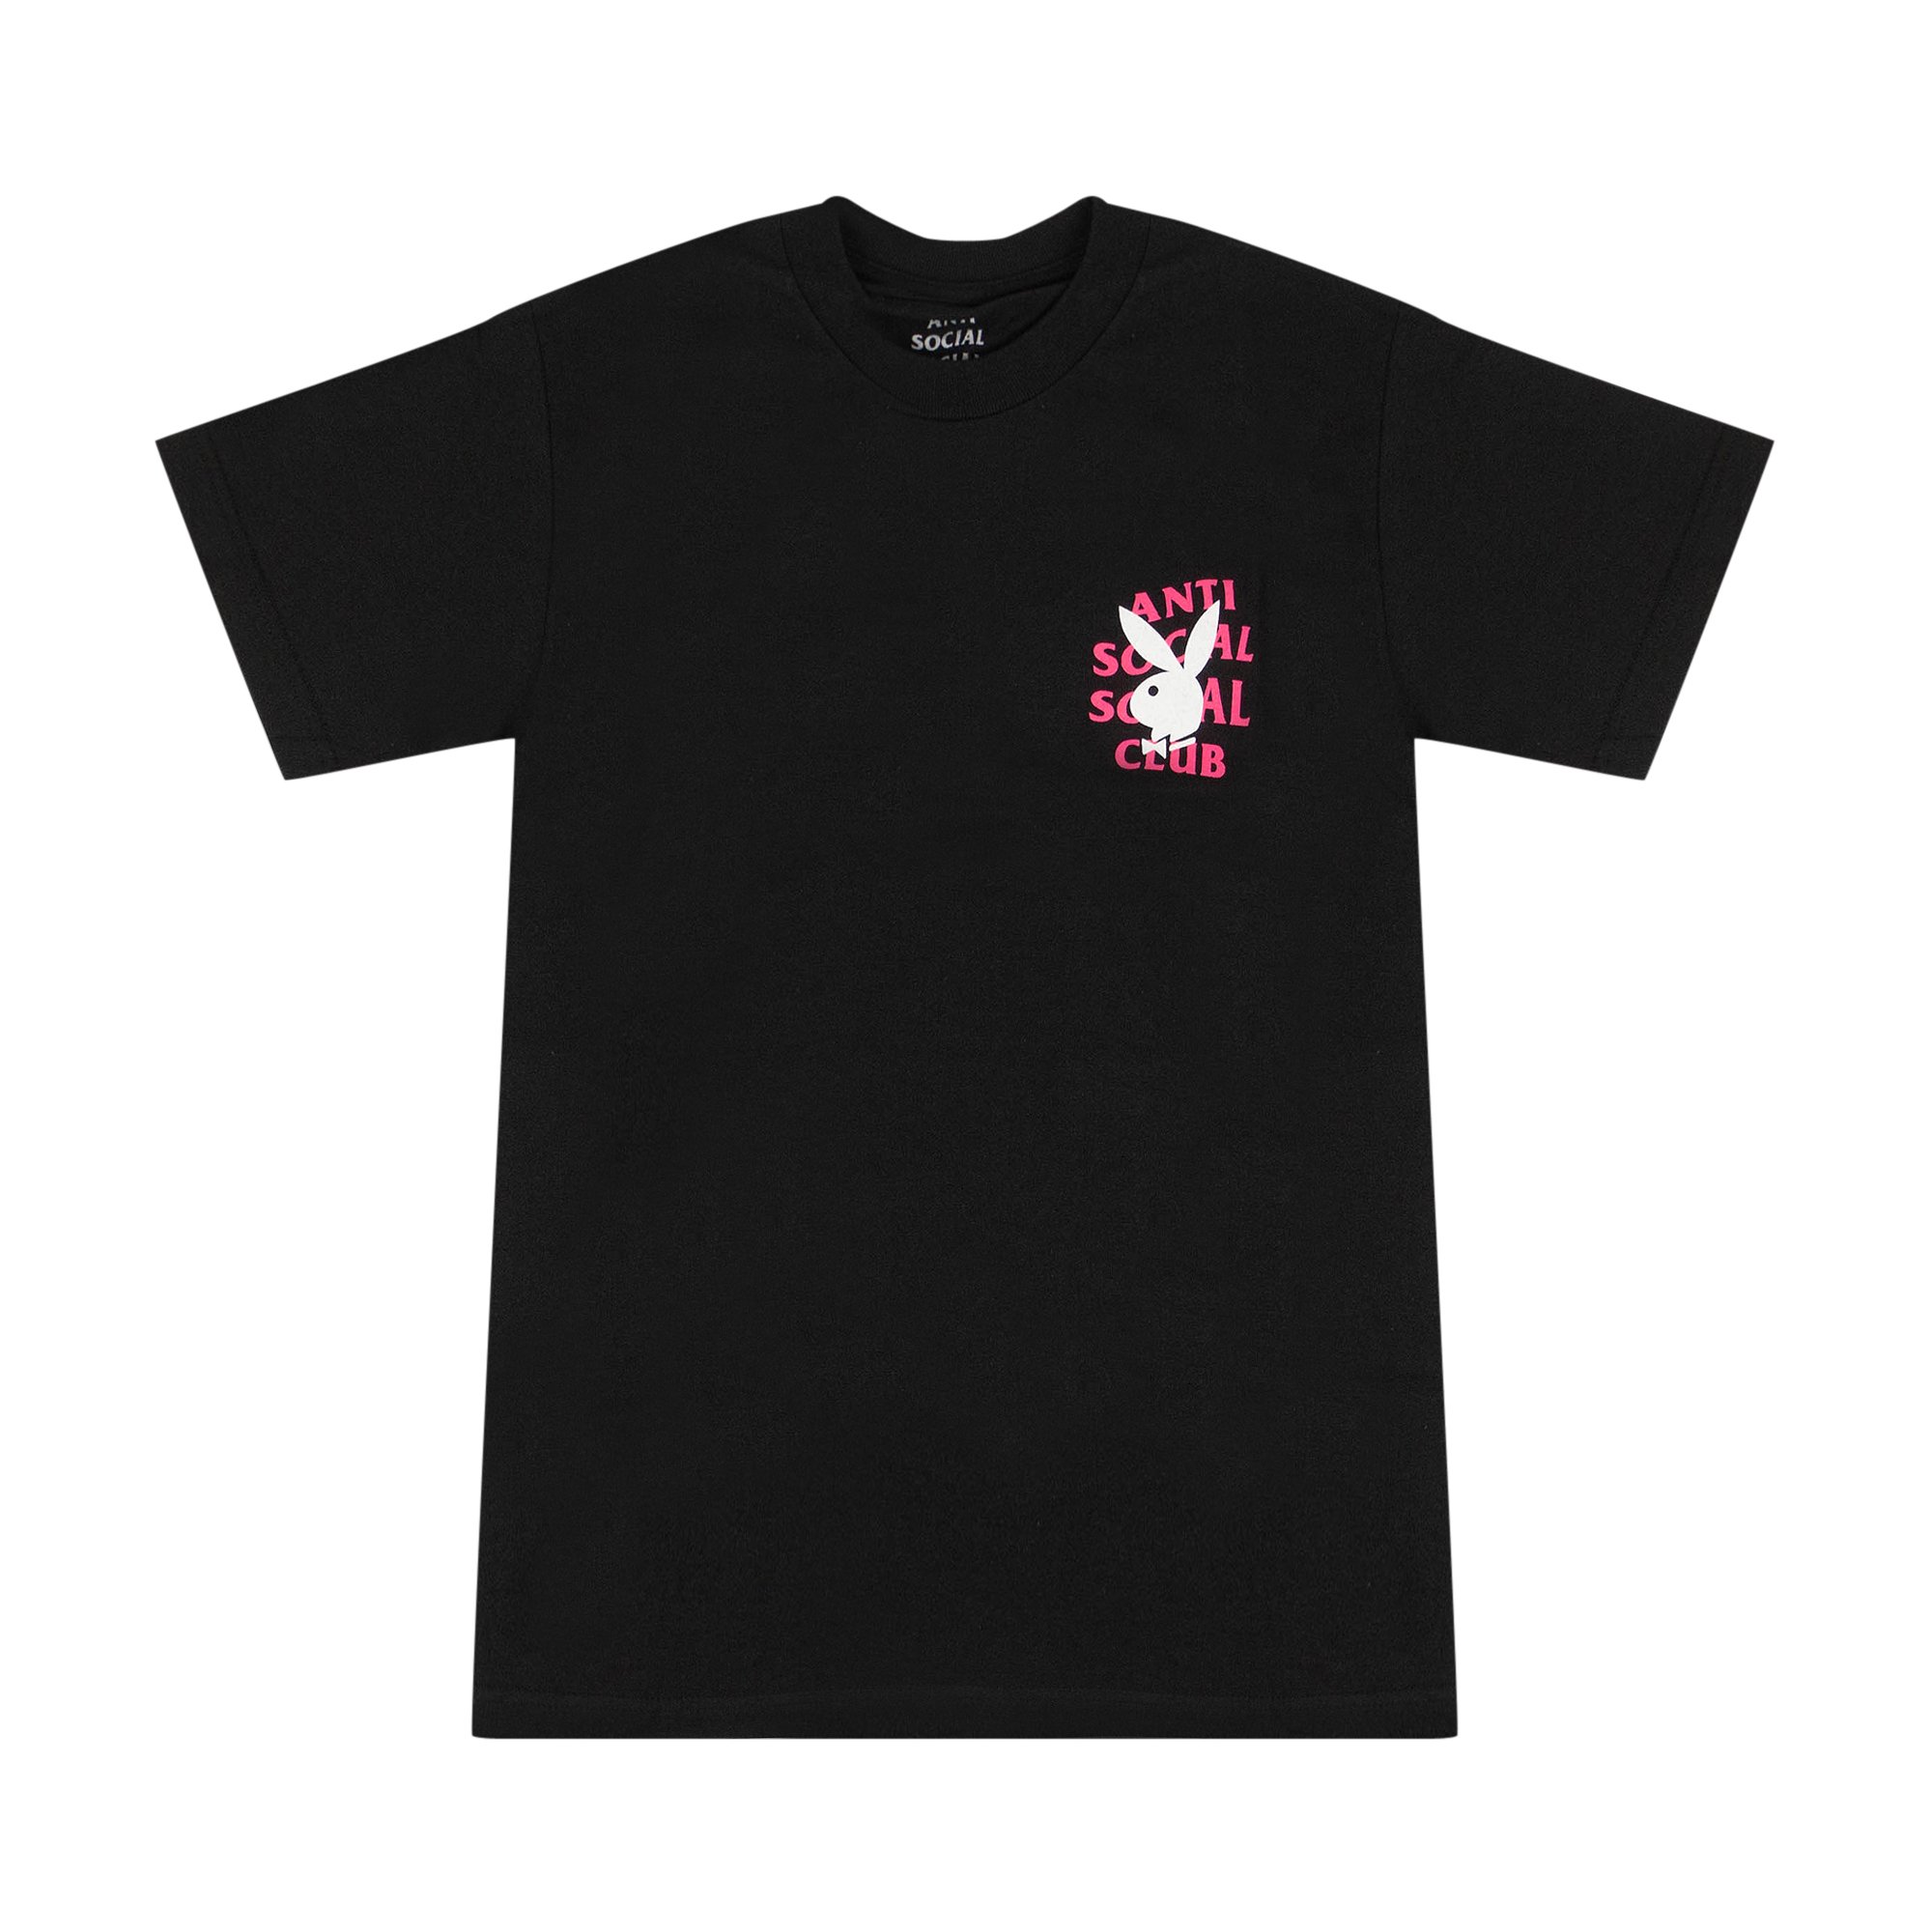 Buy Anti Social Social Club x Playboy Remix T-Shirt 'Black' - 0657 ...